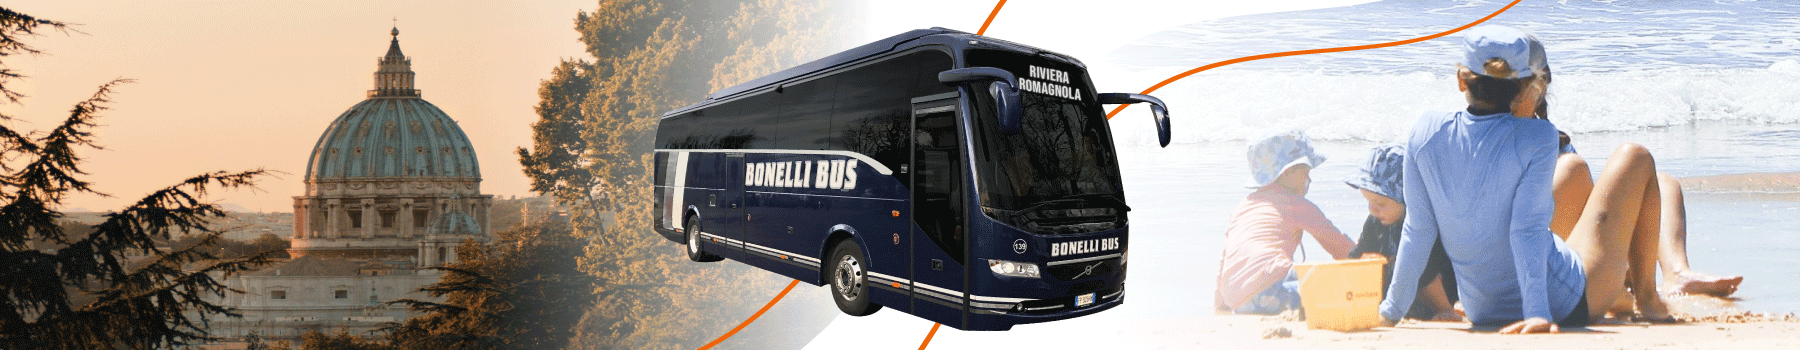 Von Rom nach Rimini mit dem Bus - Bonelli Bus